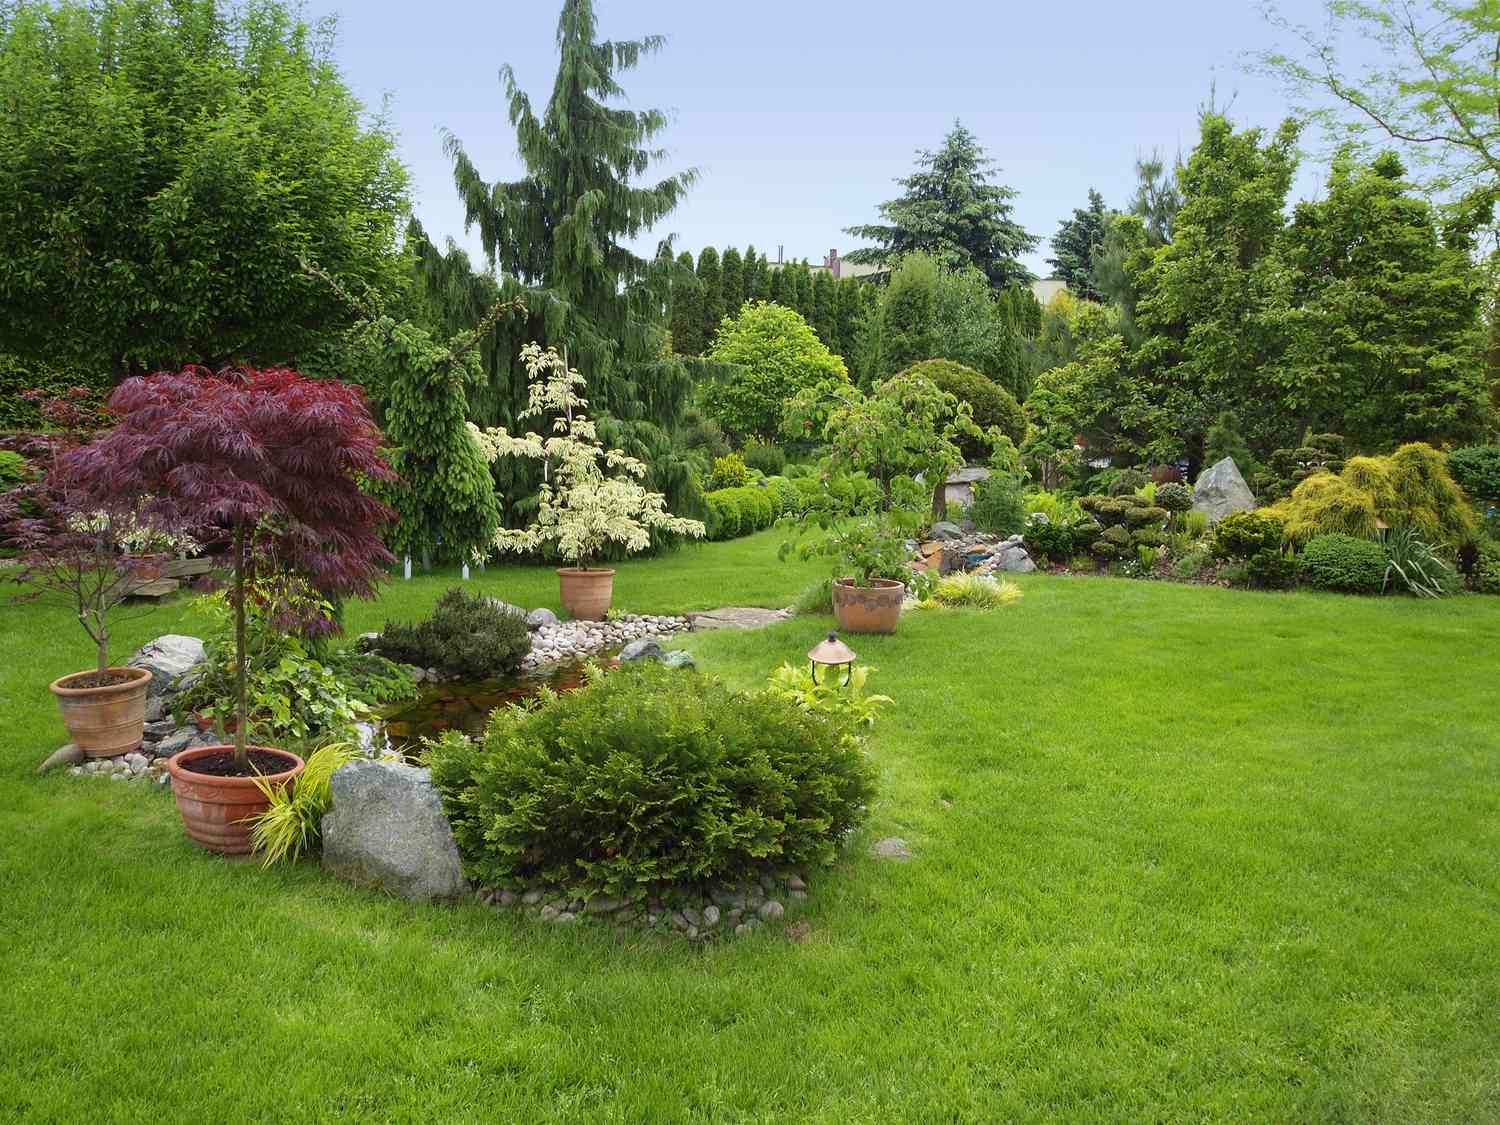 Schöner gepflegter Garten mit Büschen, Bäumen, Steinen, Teich, saftigem Gras